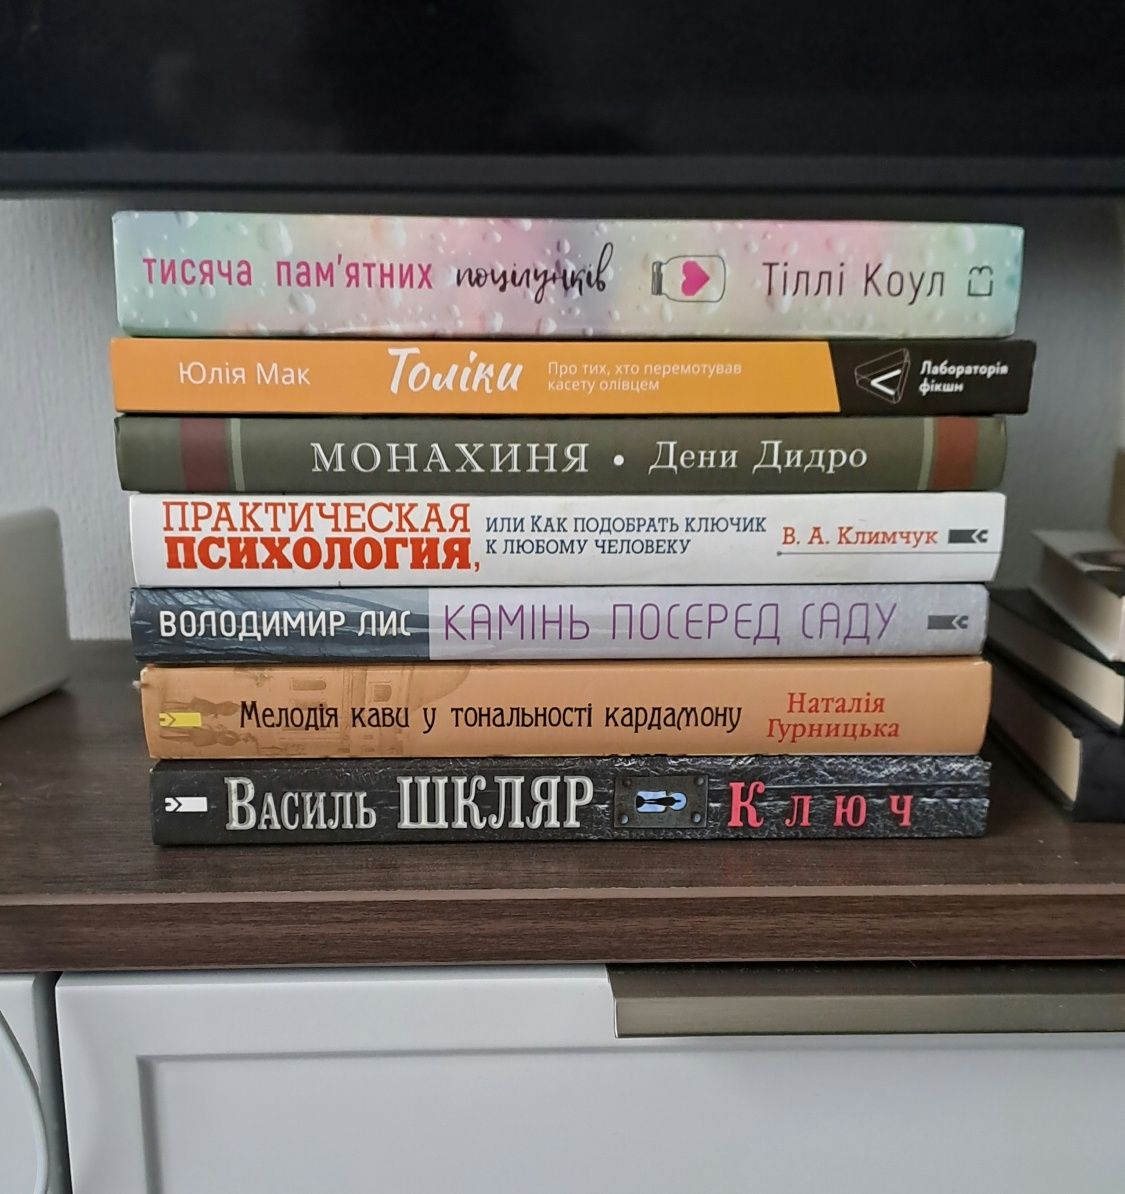 Книги сучасна література: Шкляр, Лис, Гурницька, Мак, Дідро